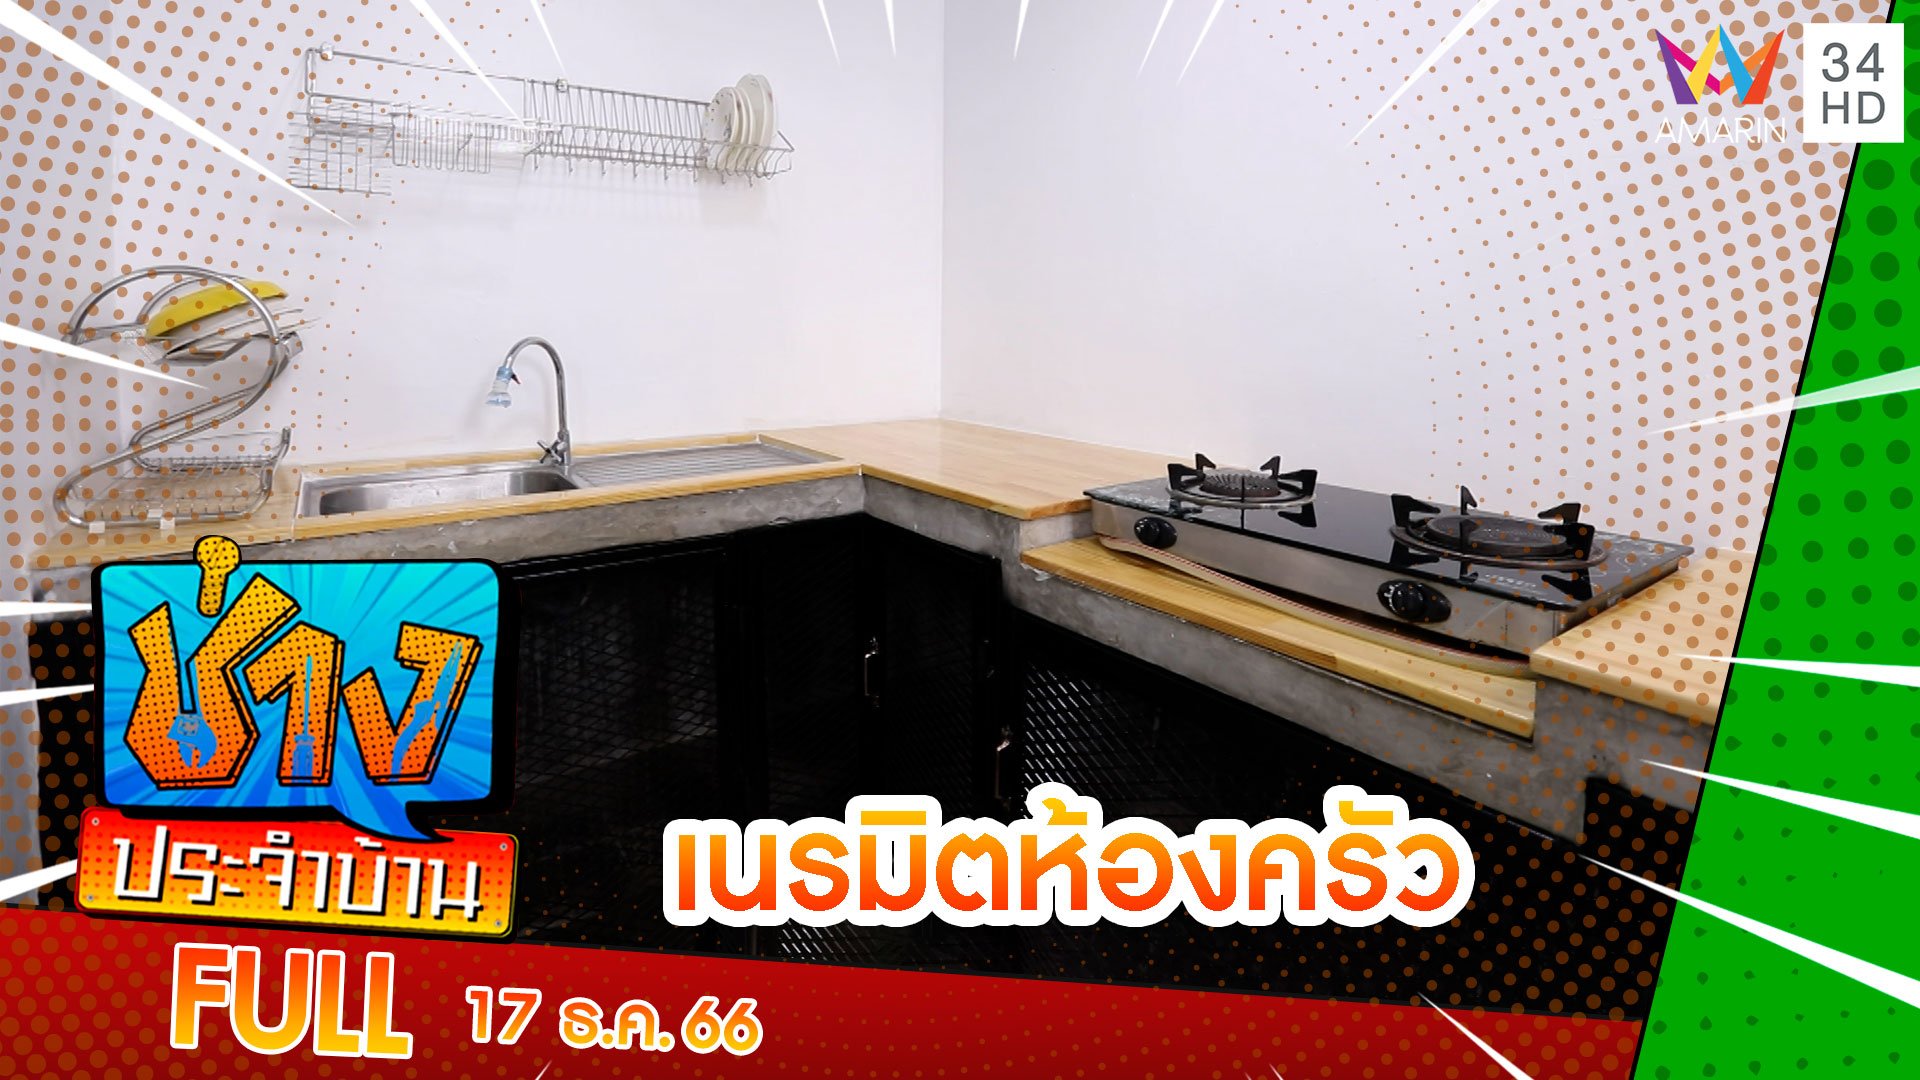 เนรมิตห้องครัวสไตล์ที่ใช่ในวันที่ชอบความเรียบง่าย | ช่างประจำบ้าน | 17 ธ.ค. 66 | AMARIN TVHD34